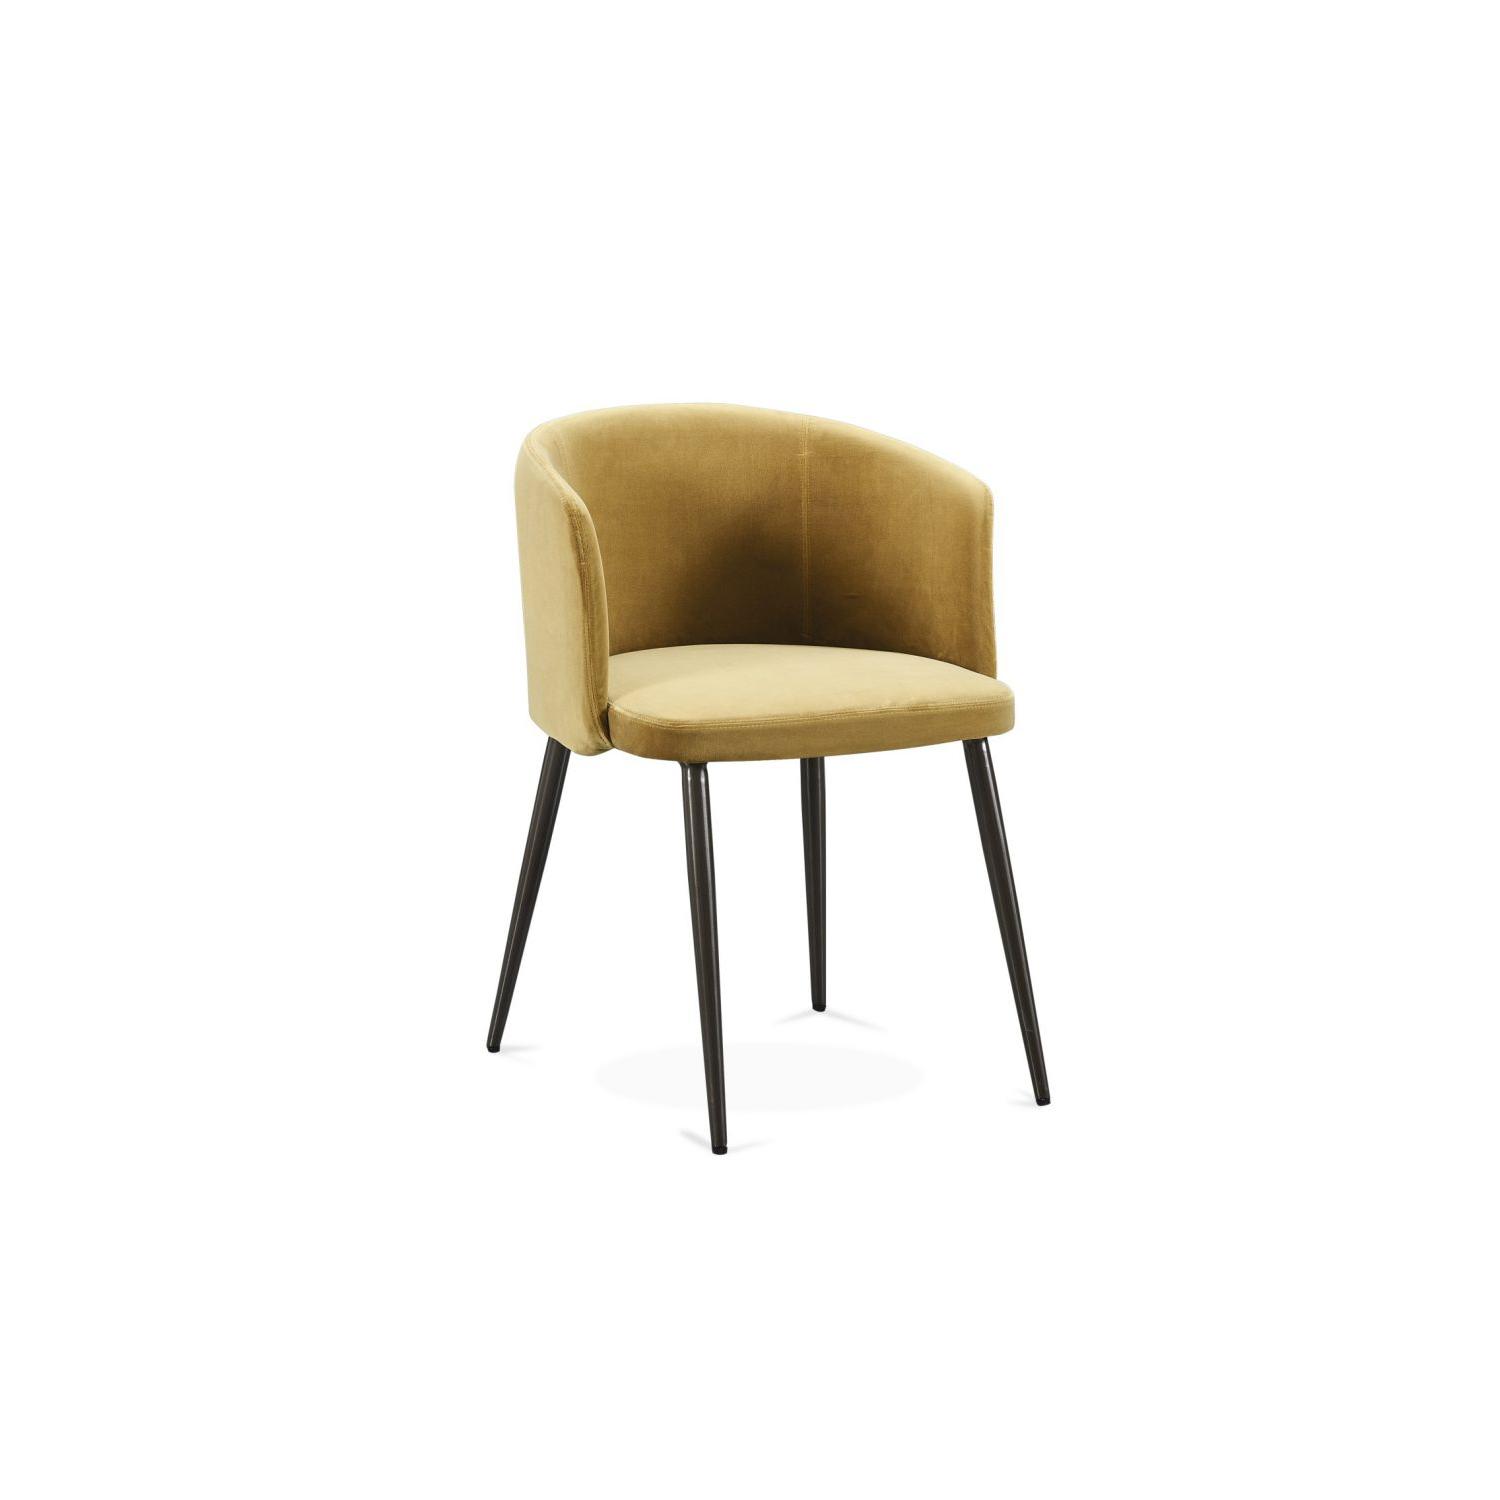 Индивидуальный цвет современный стиль прочный сплошной деревянный кожаный обеденный кресло PU